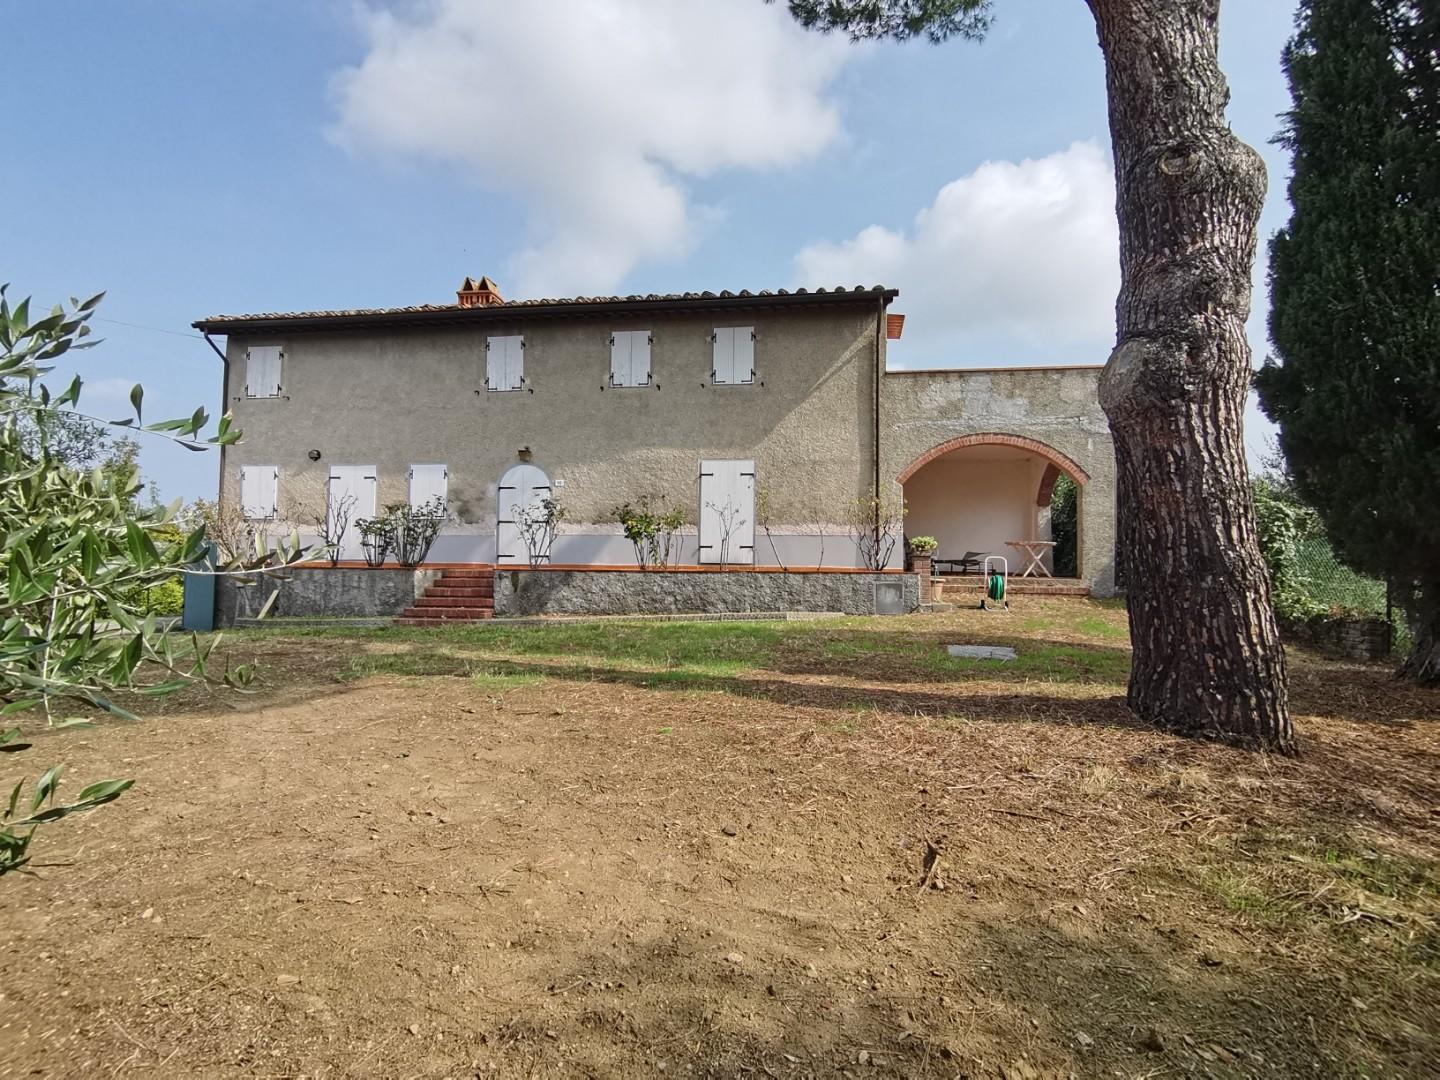 Farmhouse for sale in Montopoli in Val d'Arno (PI)